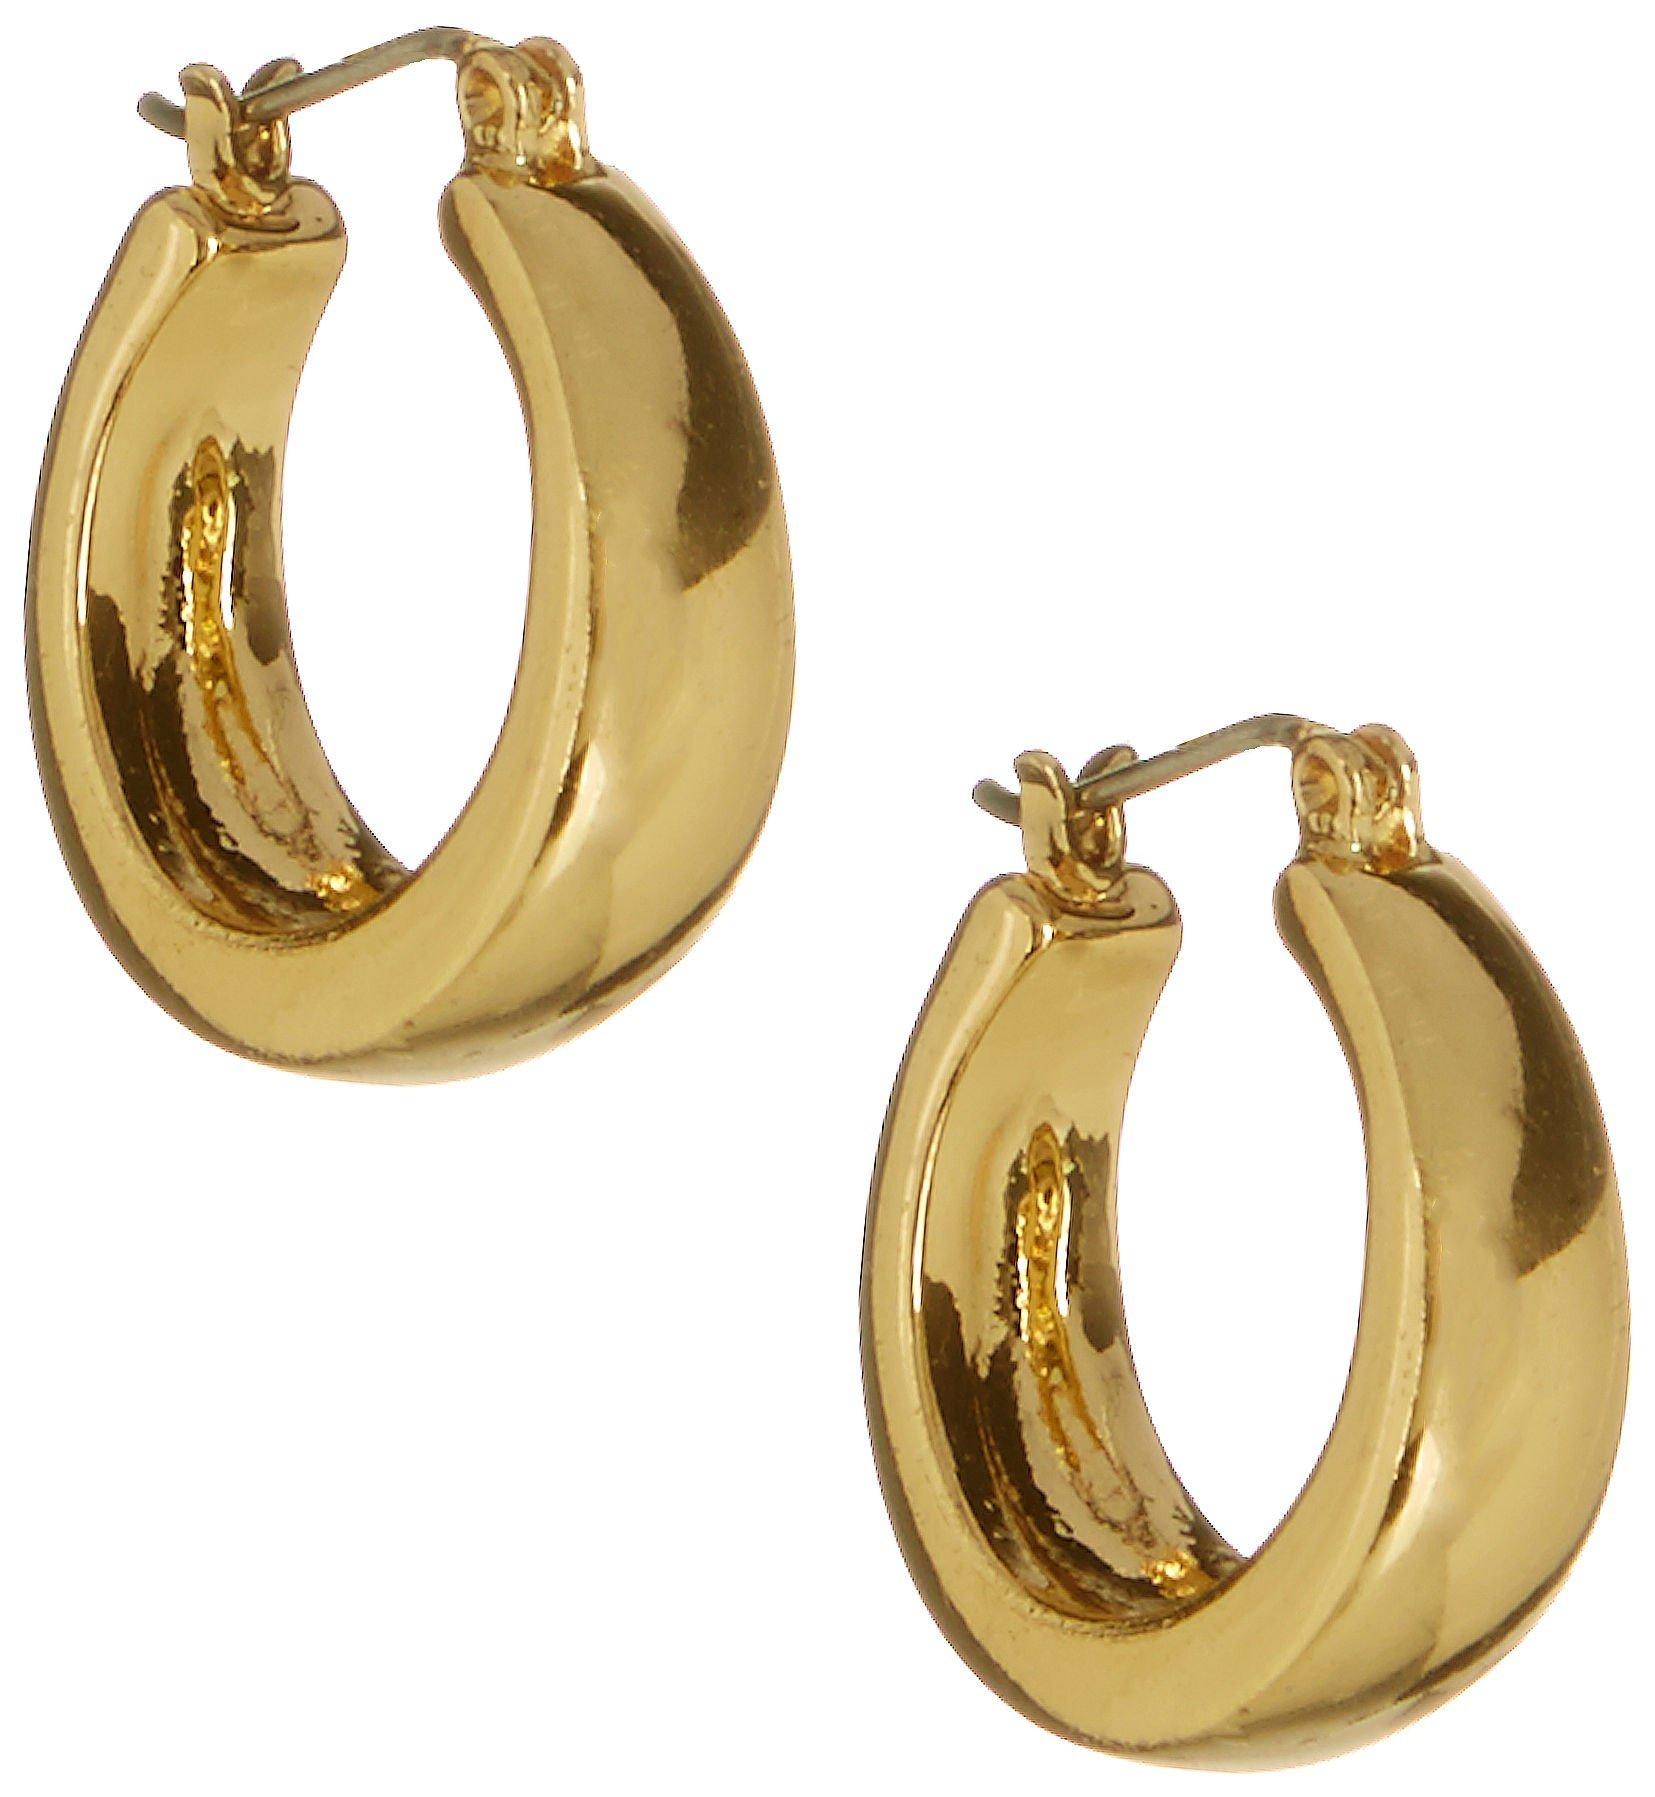 Bay Studio Gold Tone Oval Shape Hoop Earrings